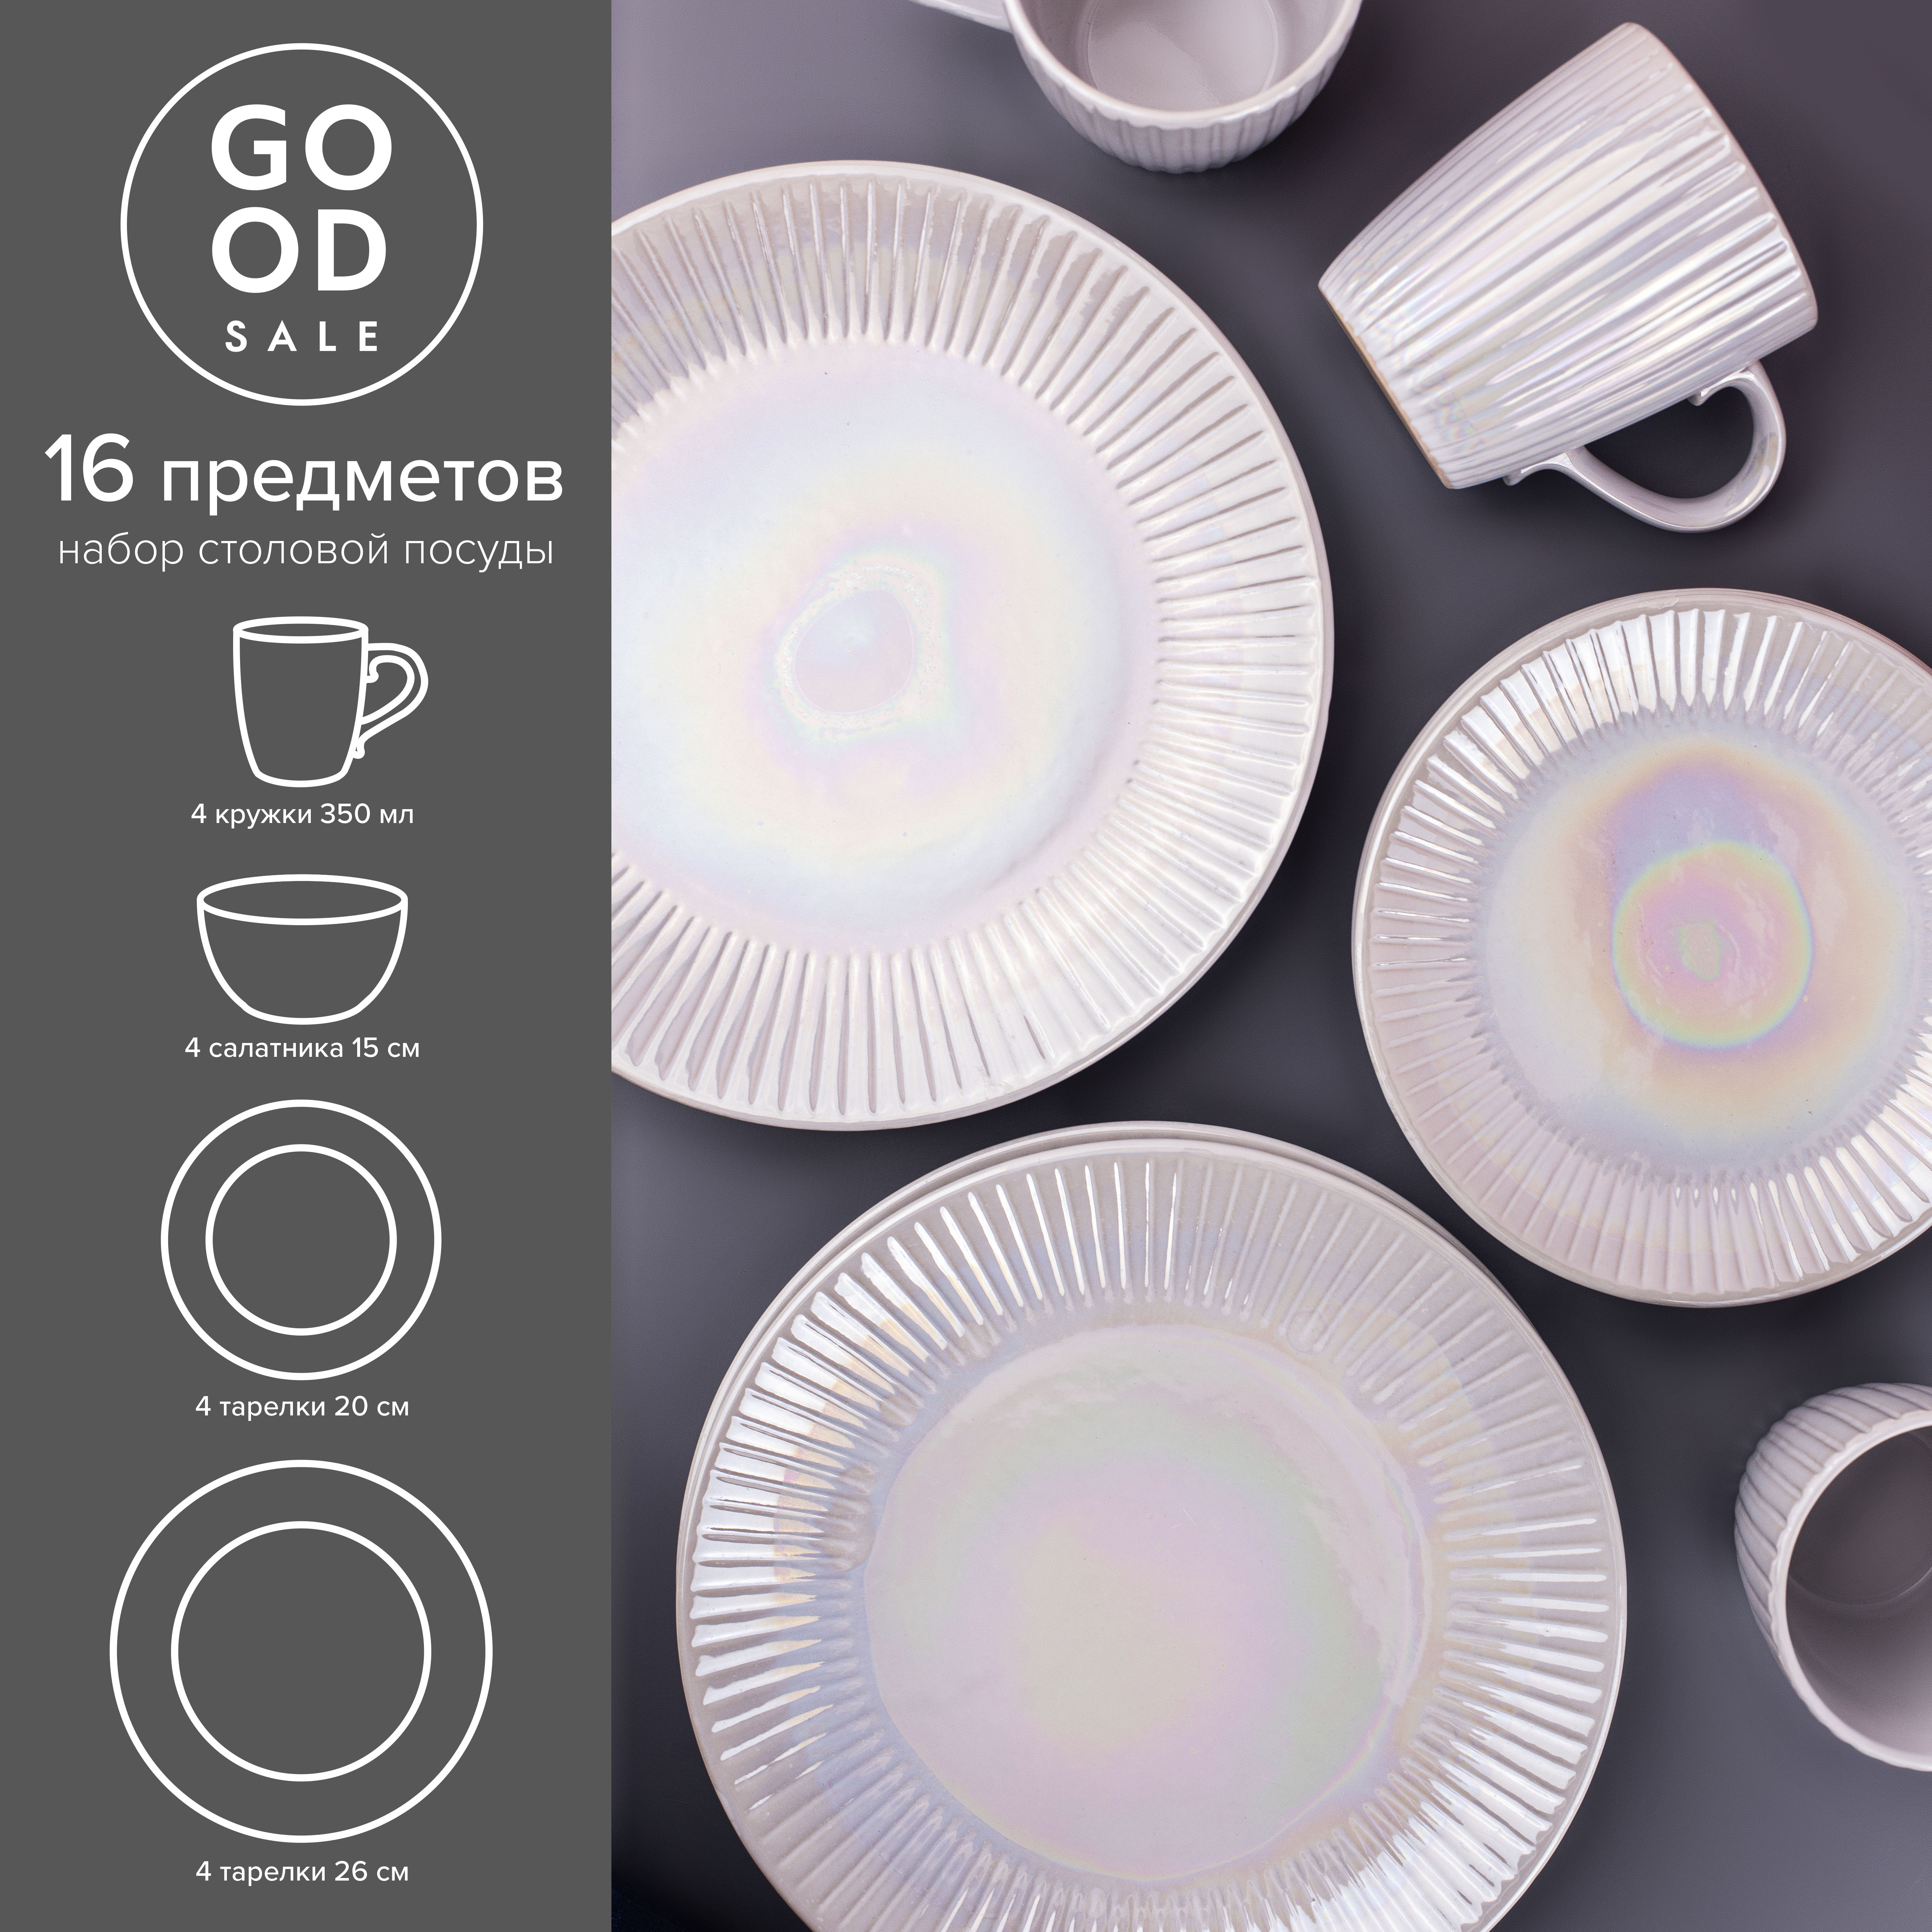 Набор столовой посуды Good Sale керамический 16 предметов - фото 3